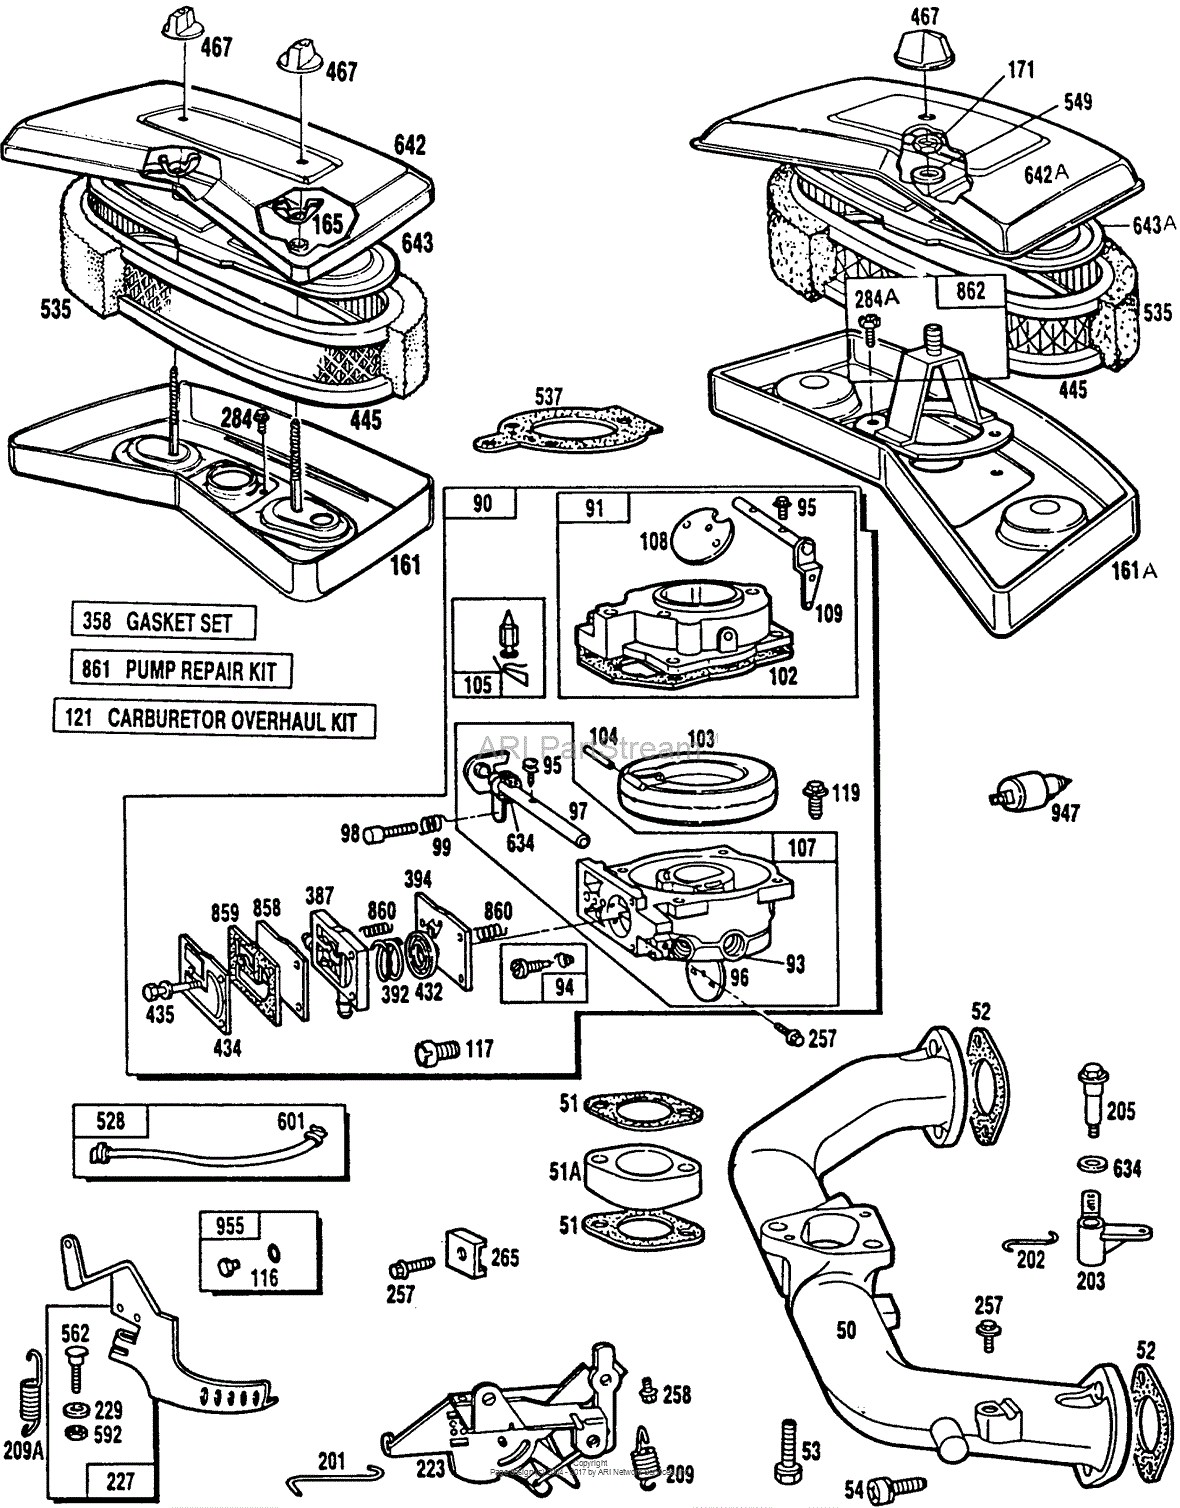 Briggs and Stratton Parts Diagrams Briggs and Stratton 0126 01 Parts Diagram for Carburetor assemblies A C Of Briggs and Stratton Parts Diagrams